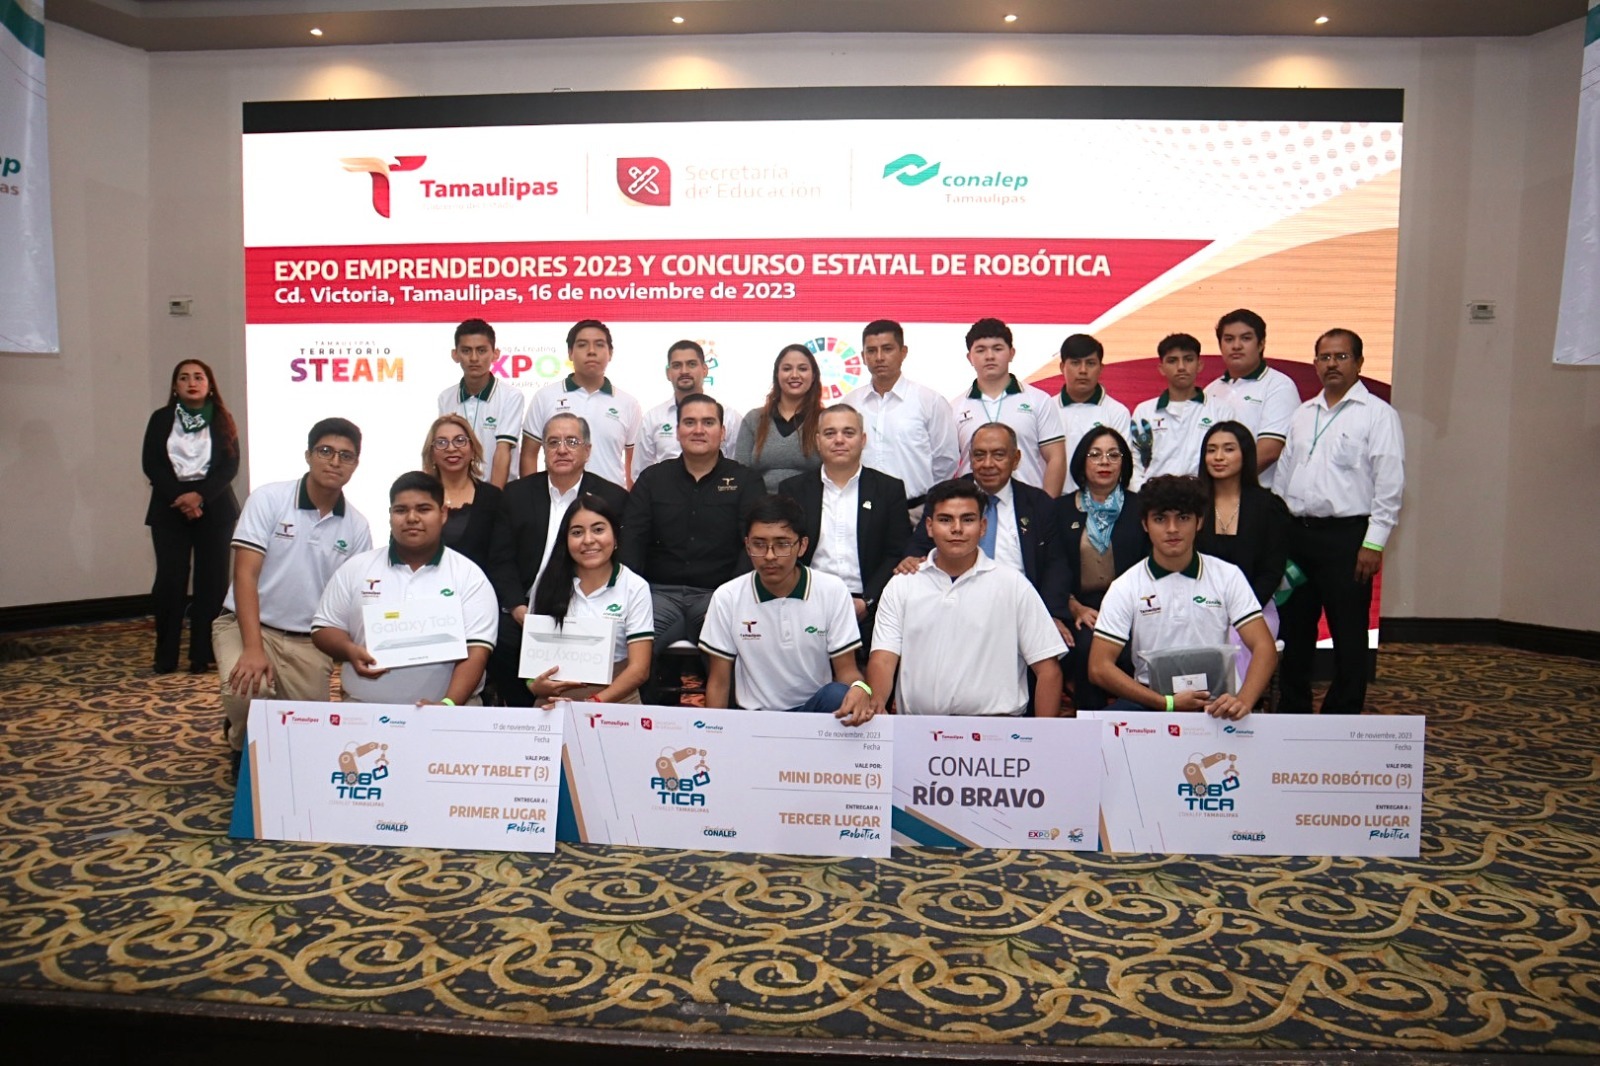 Destaca el ingenio de estudiantes en “Expo Emprendedores y Concurso de Robótica 2023” CONALEP Tamaulipas